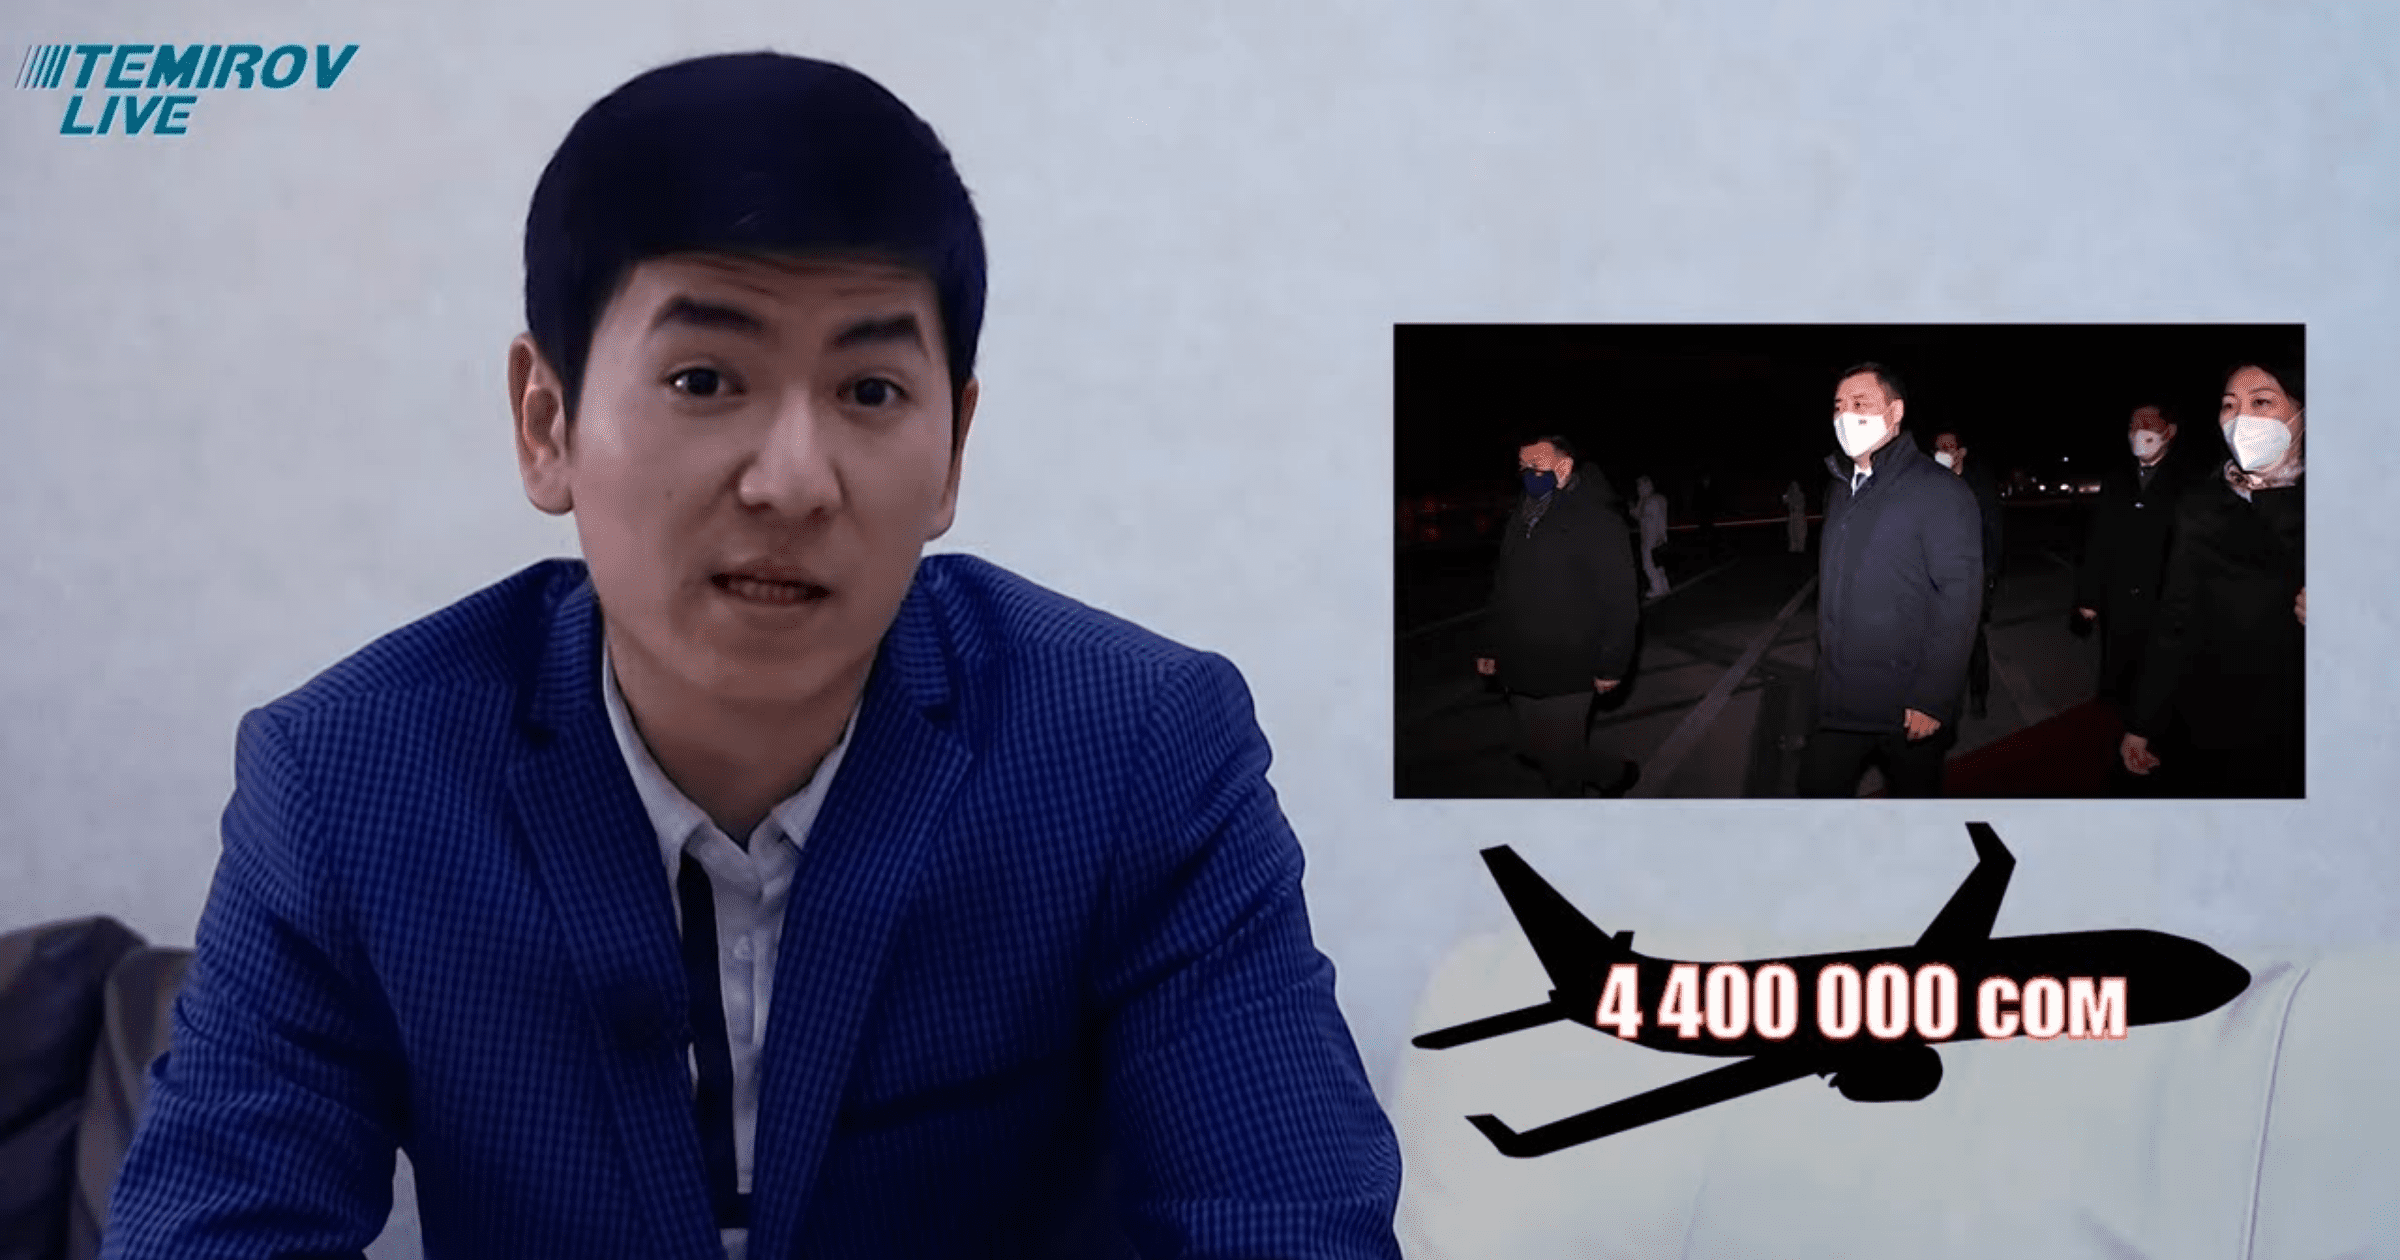 Жапаров полетел в Пекин на частном самолете, это могло обойтись в 4.4 млн сомов – Temirov LIVE